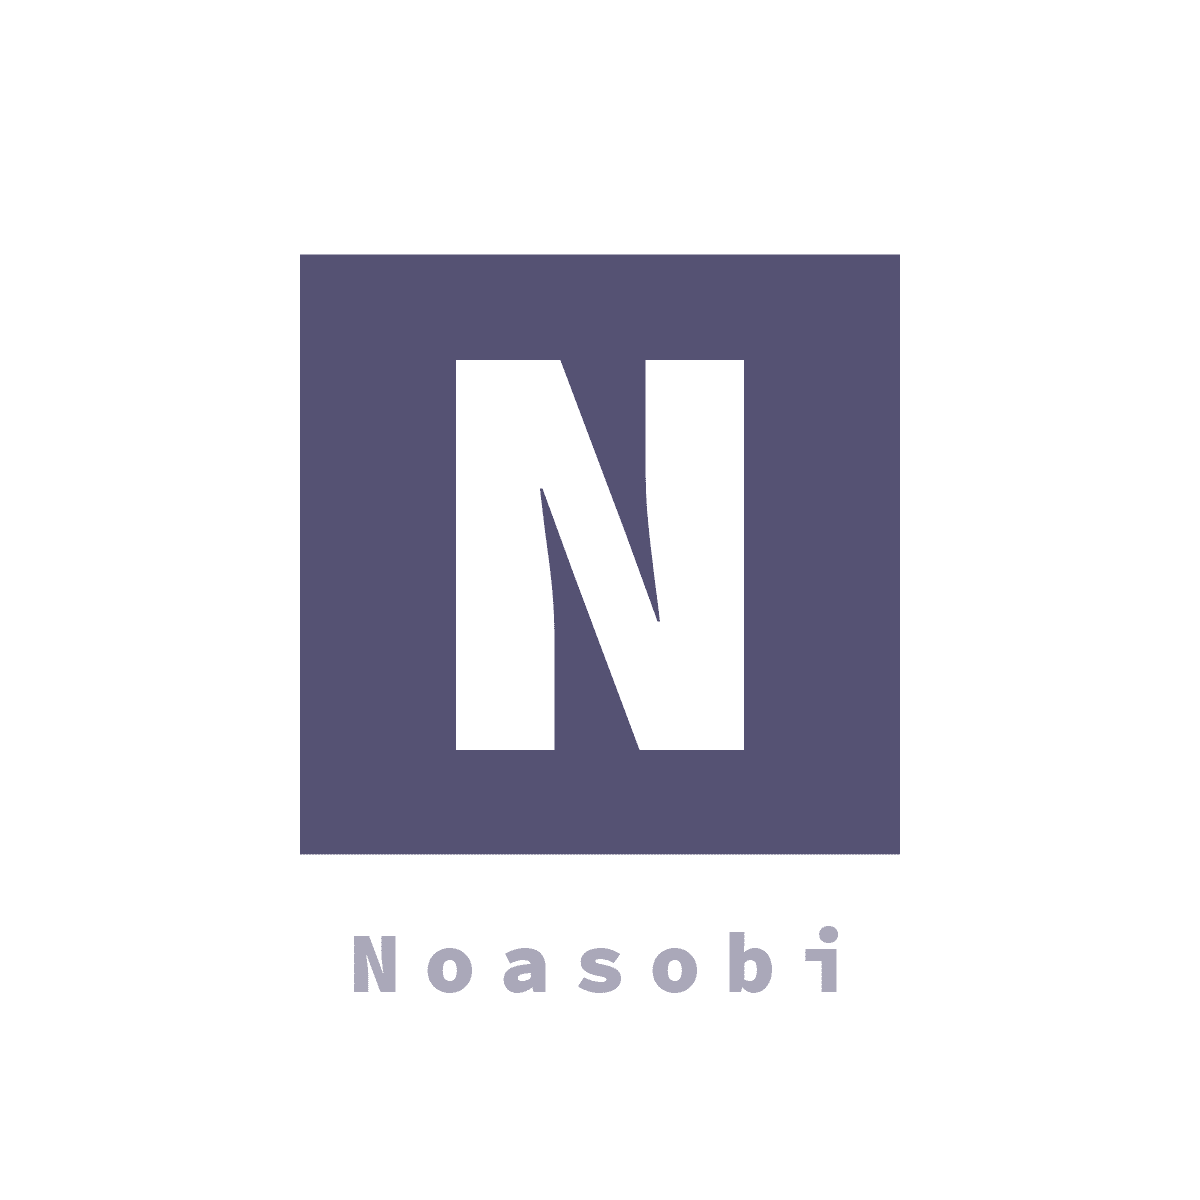 Noasobi